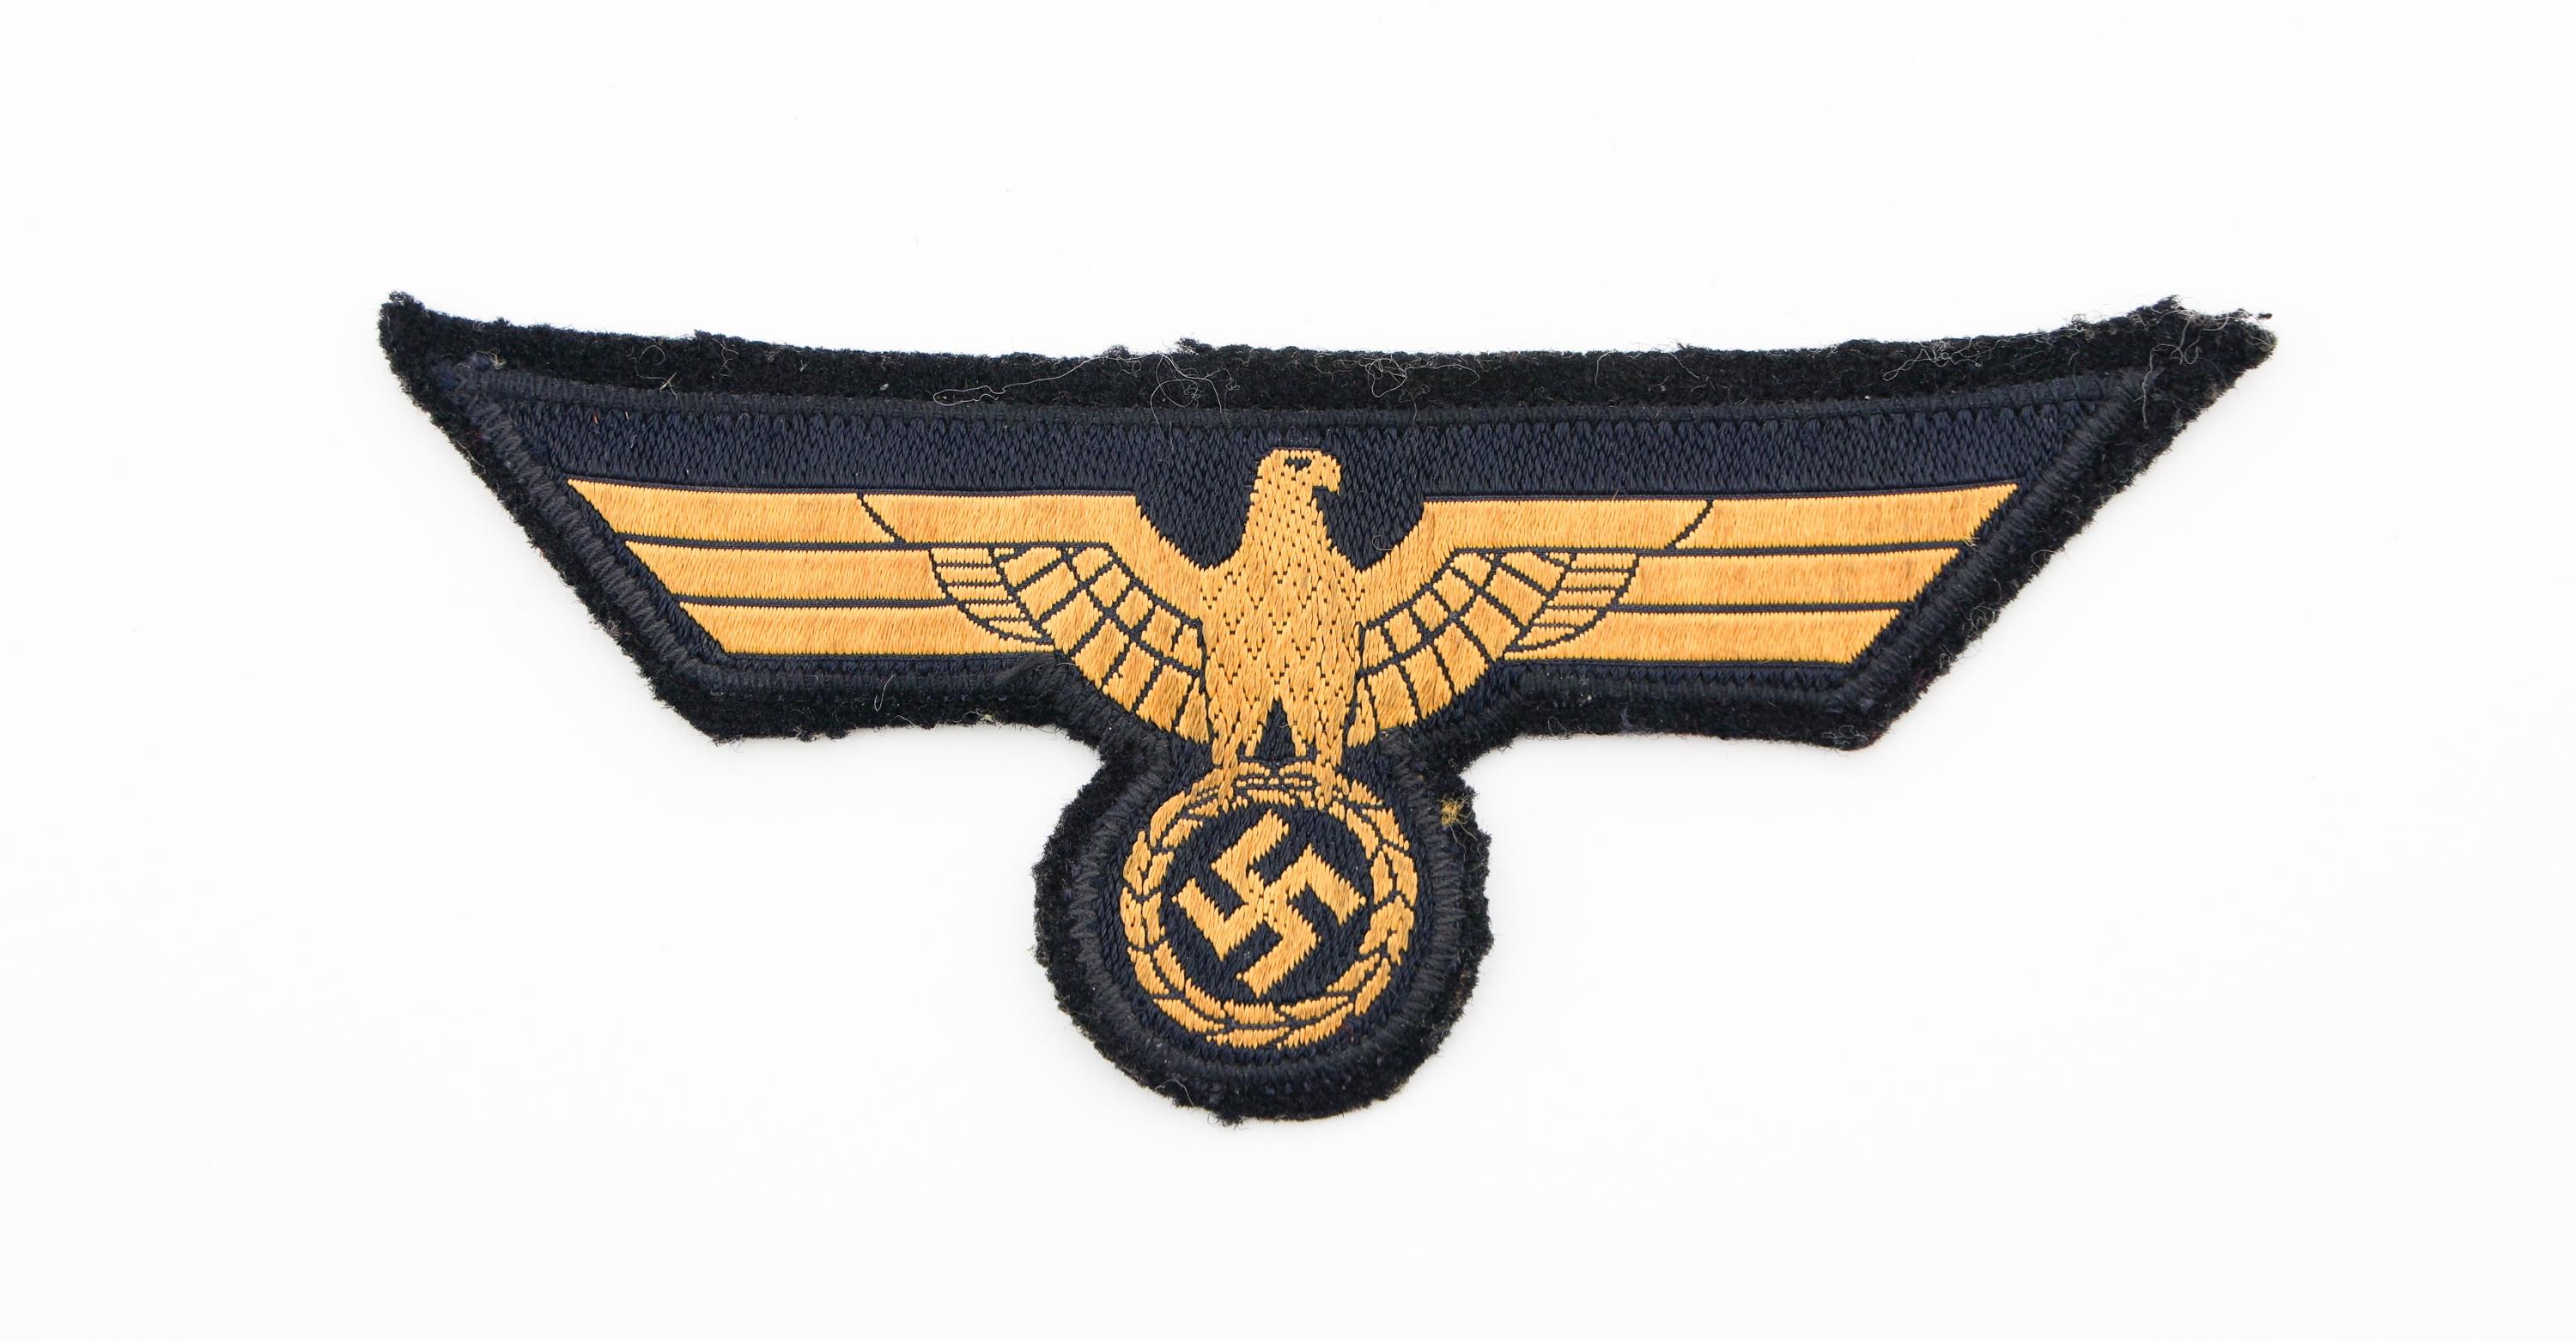 WWII GERMAN KRIEGSMARINE SLEEVE SHIELD & BADGES